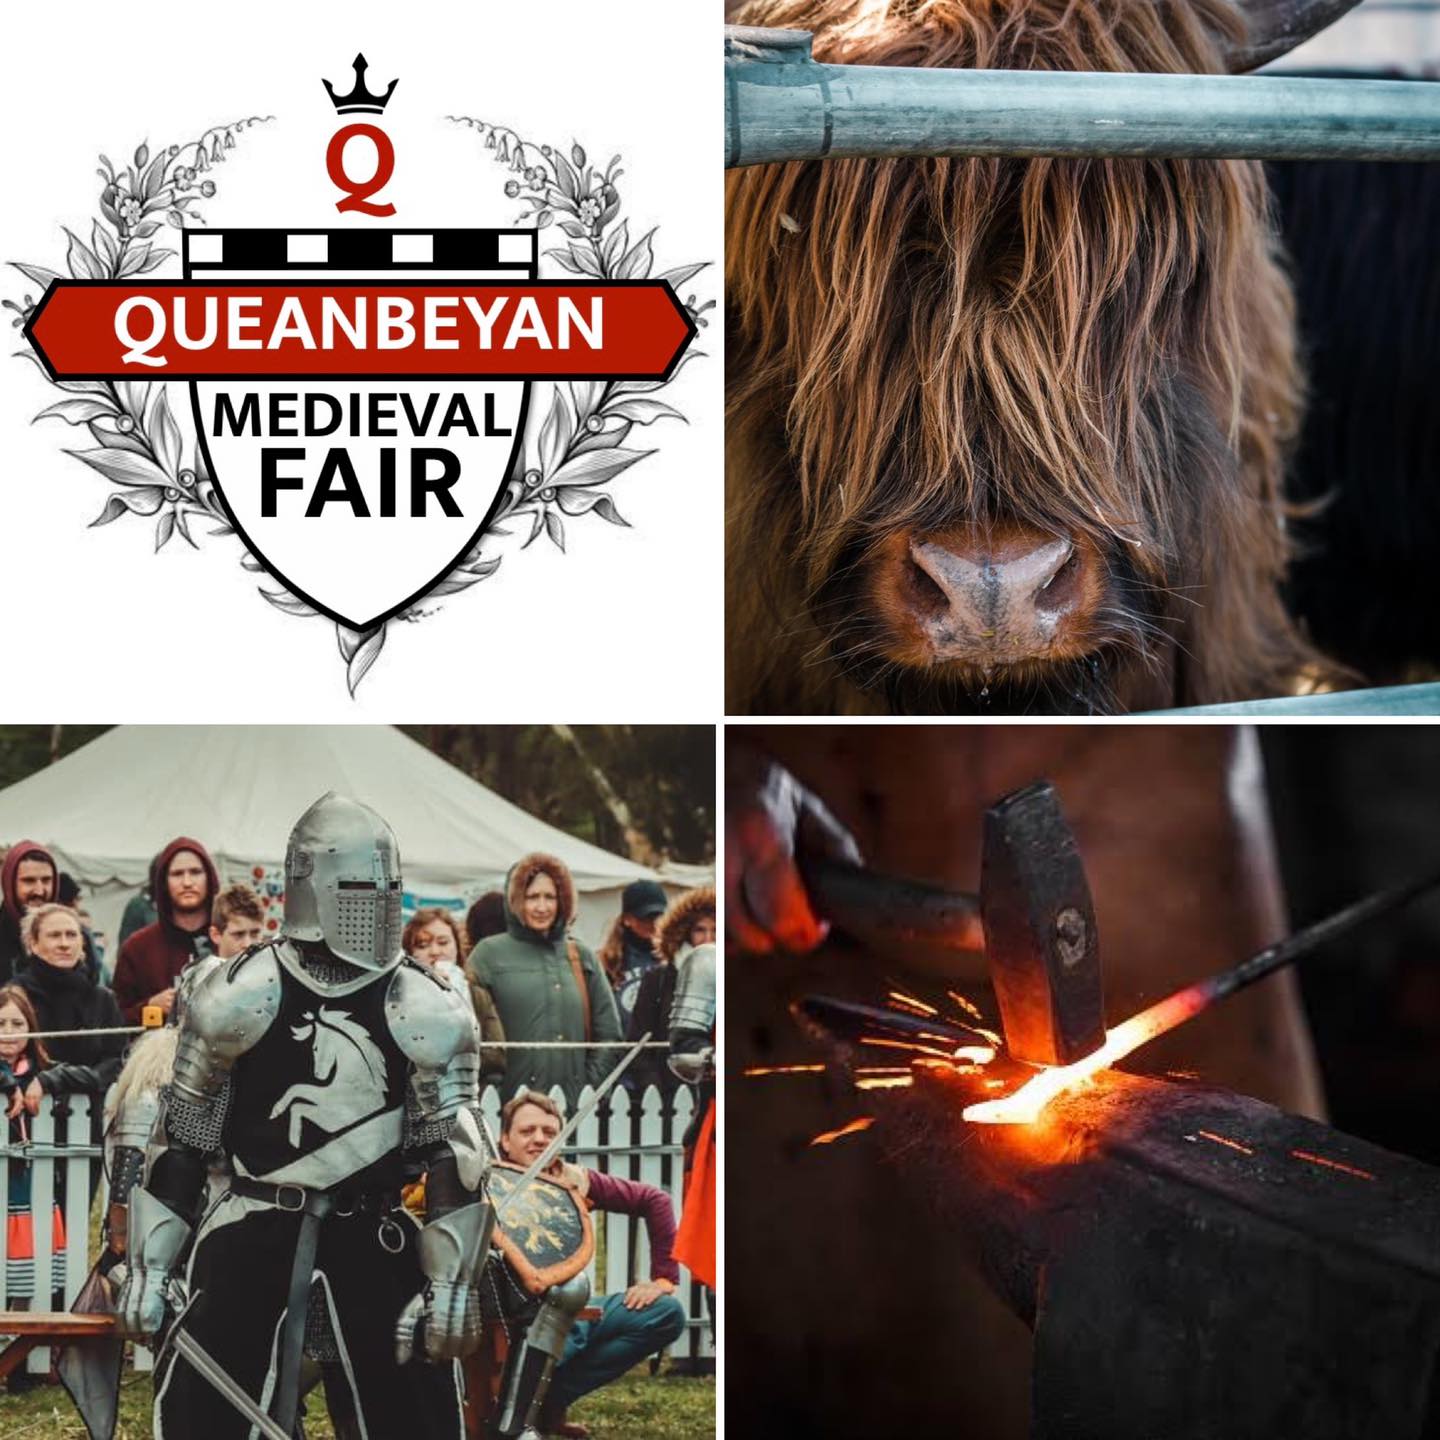 Queanbeyan Medieval Fair